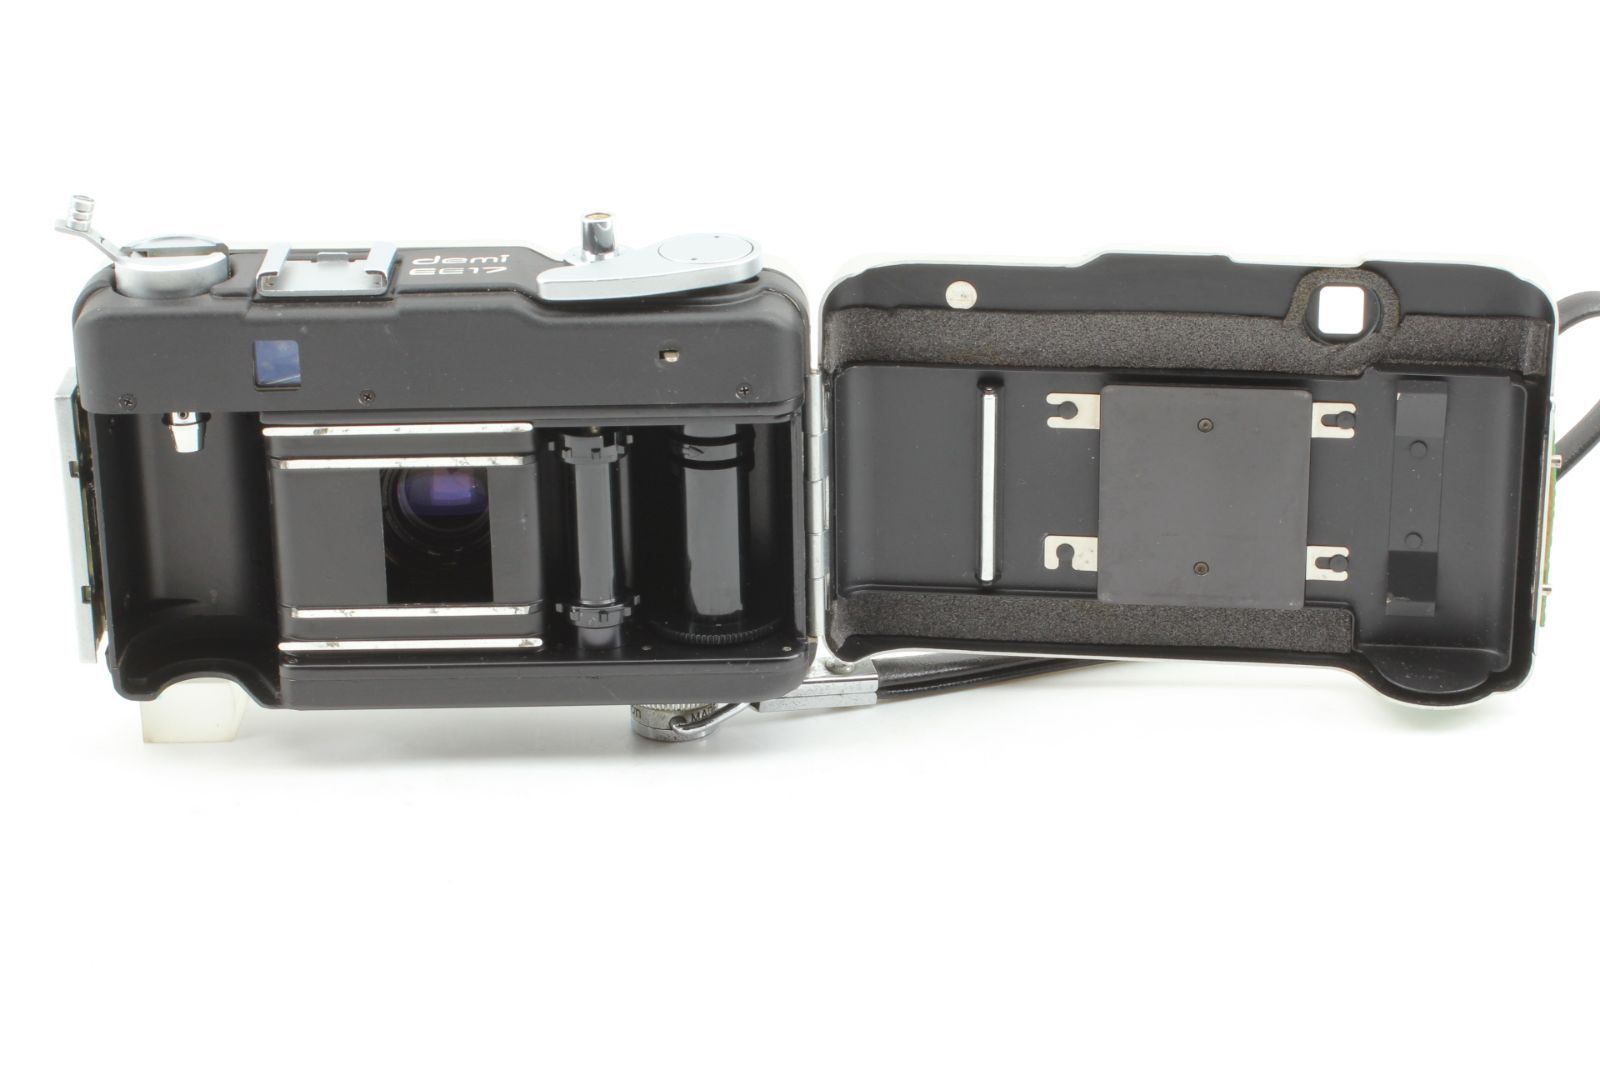 並品 Canon Demi EE17 ハーフフレームカメラ 露出計-OK